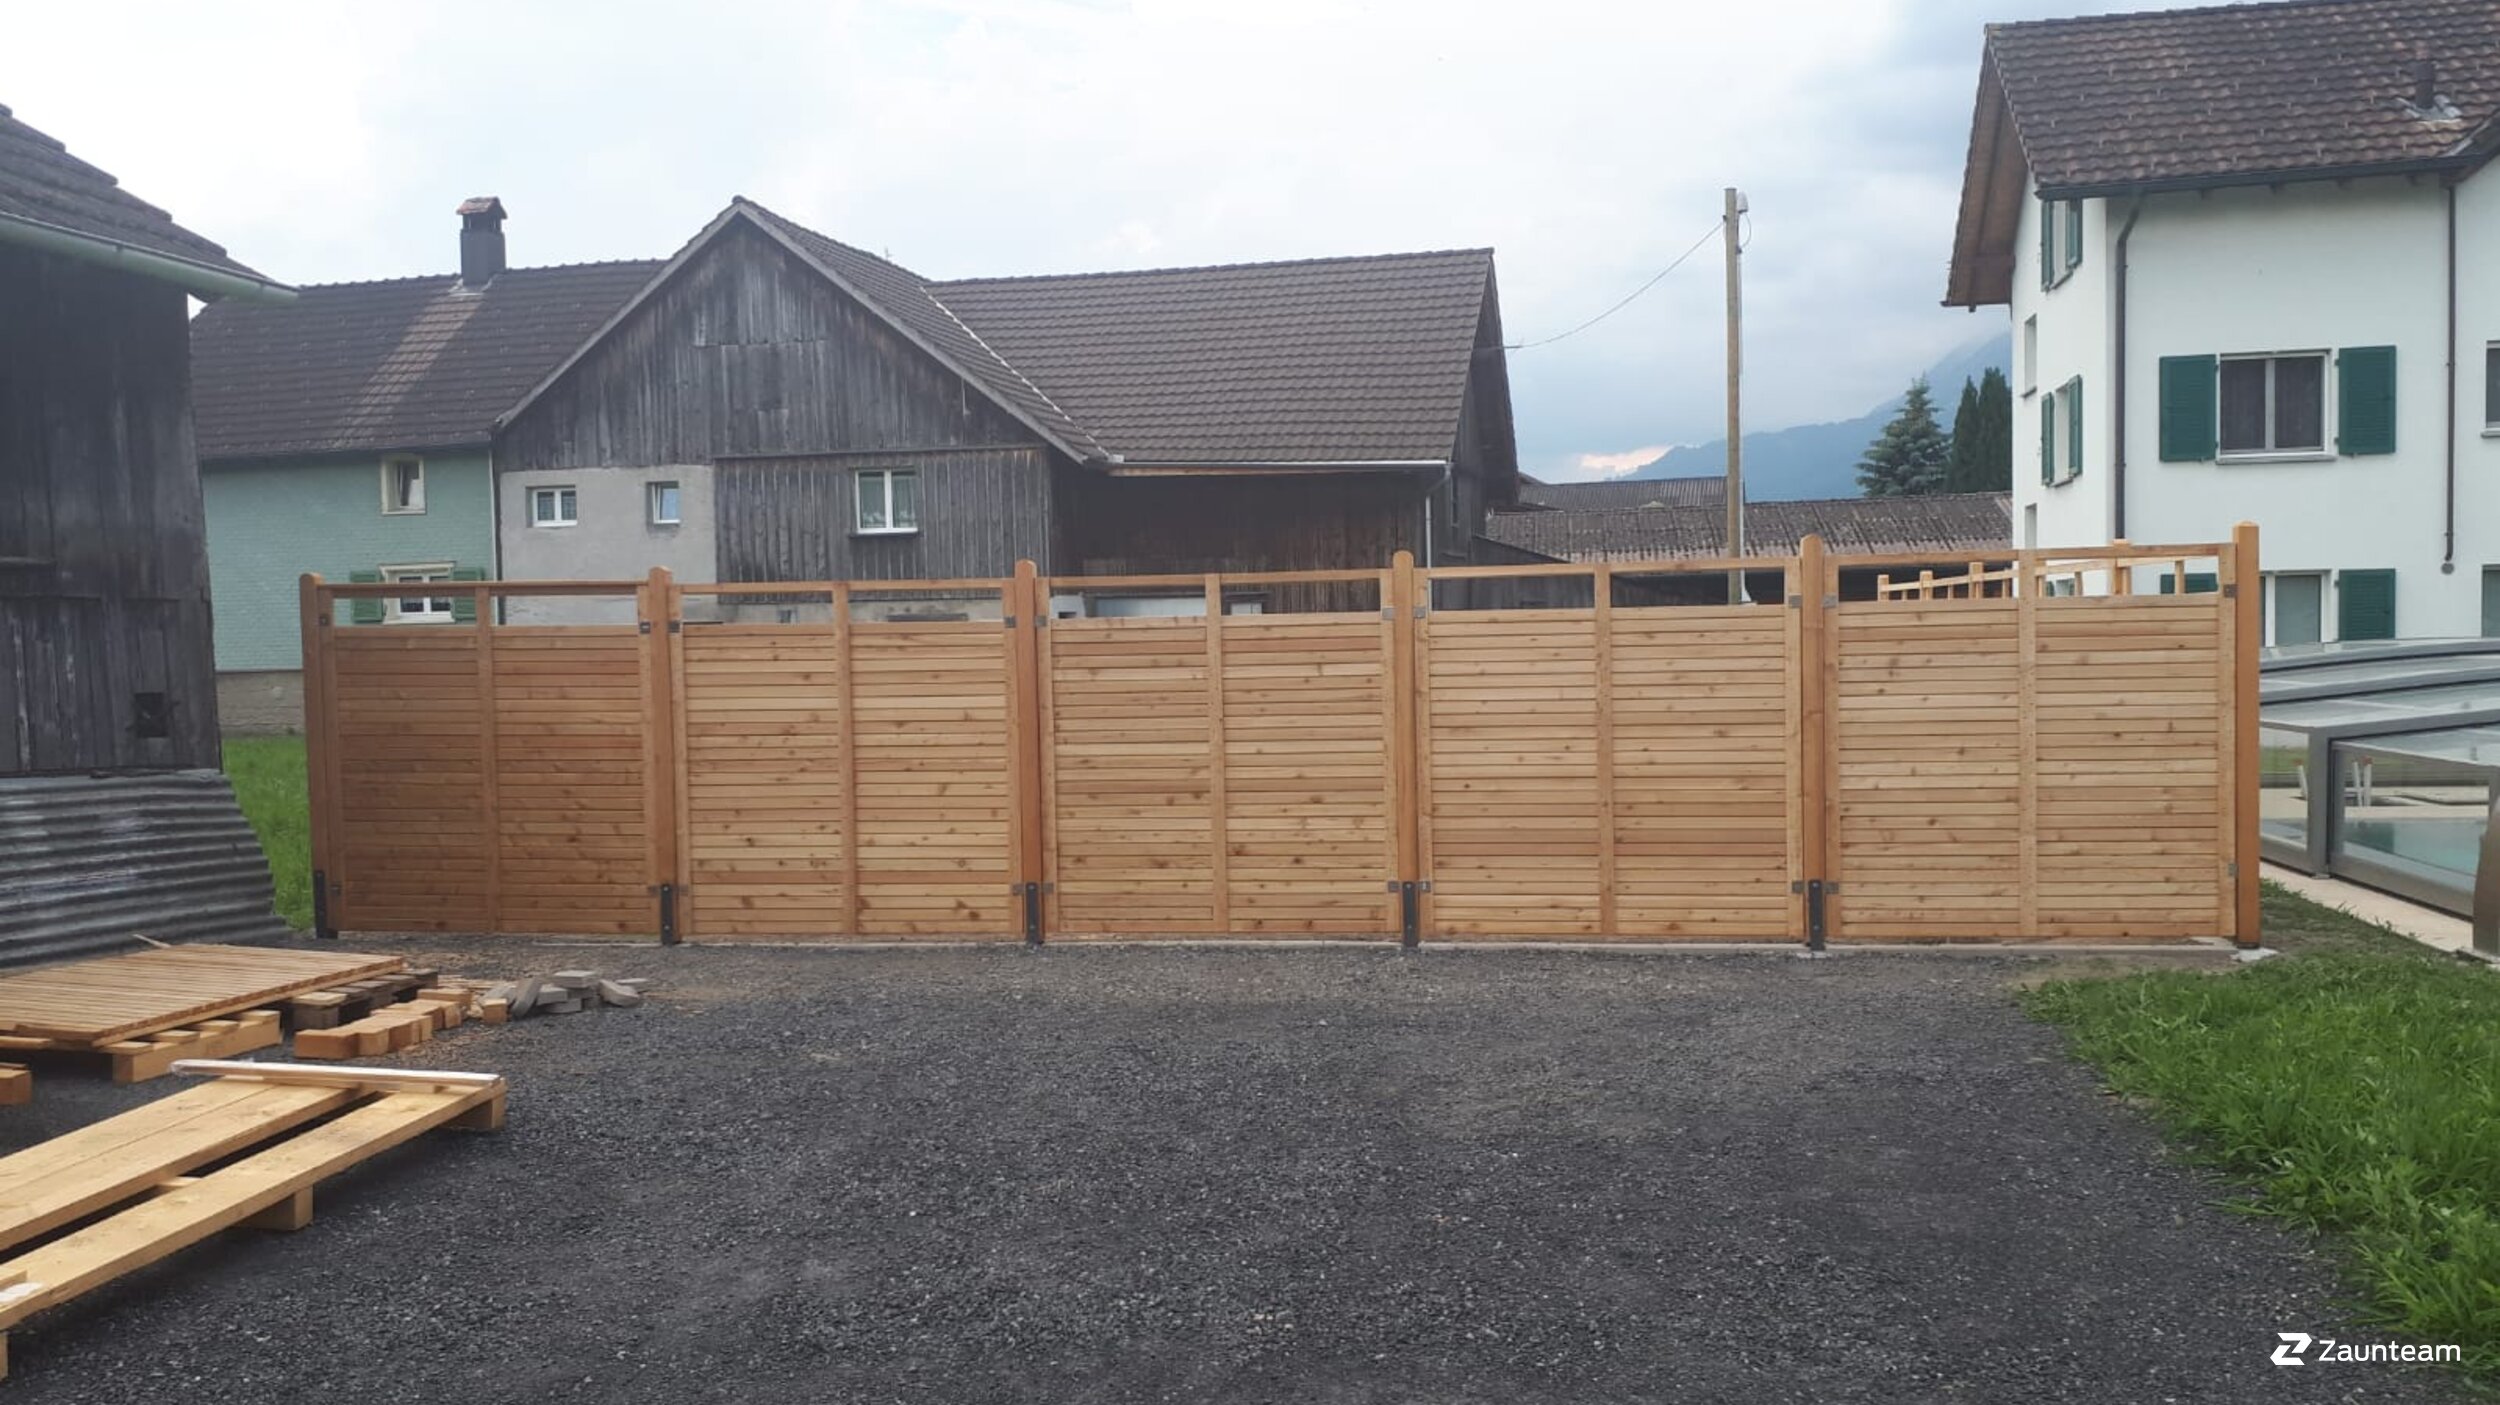 Protection brise-vue en bois de 2018 à 8887 Sankt Gallen Suisse de Zaunteam Heidiland.